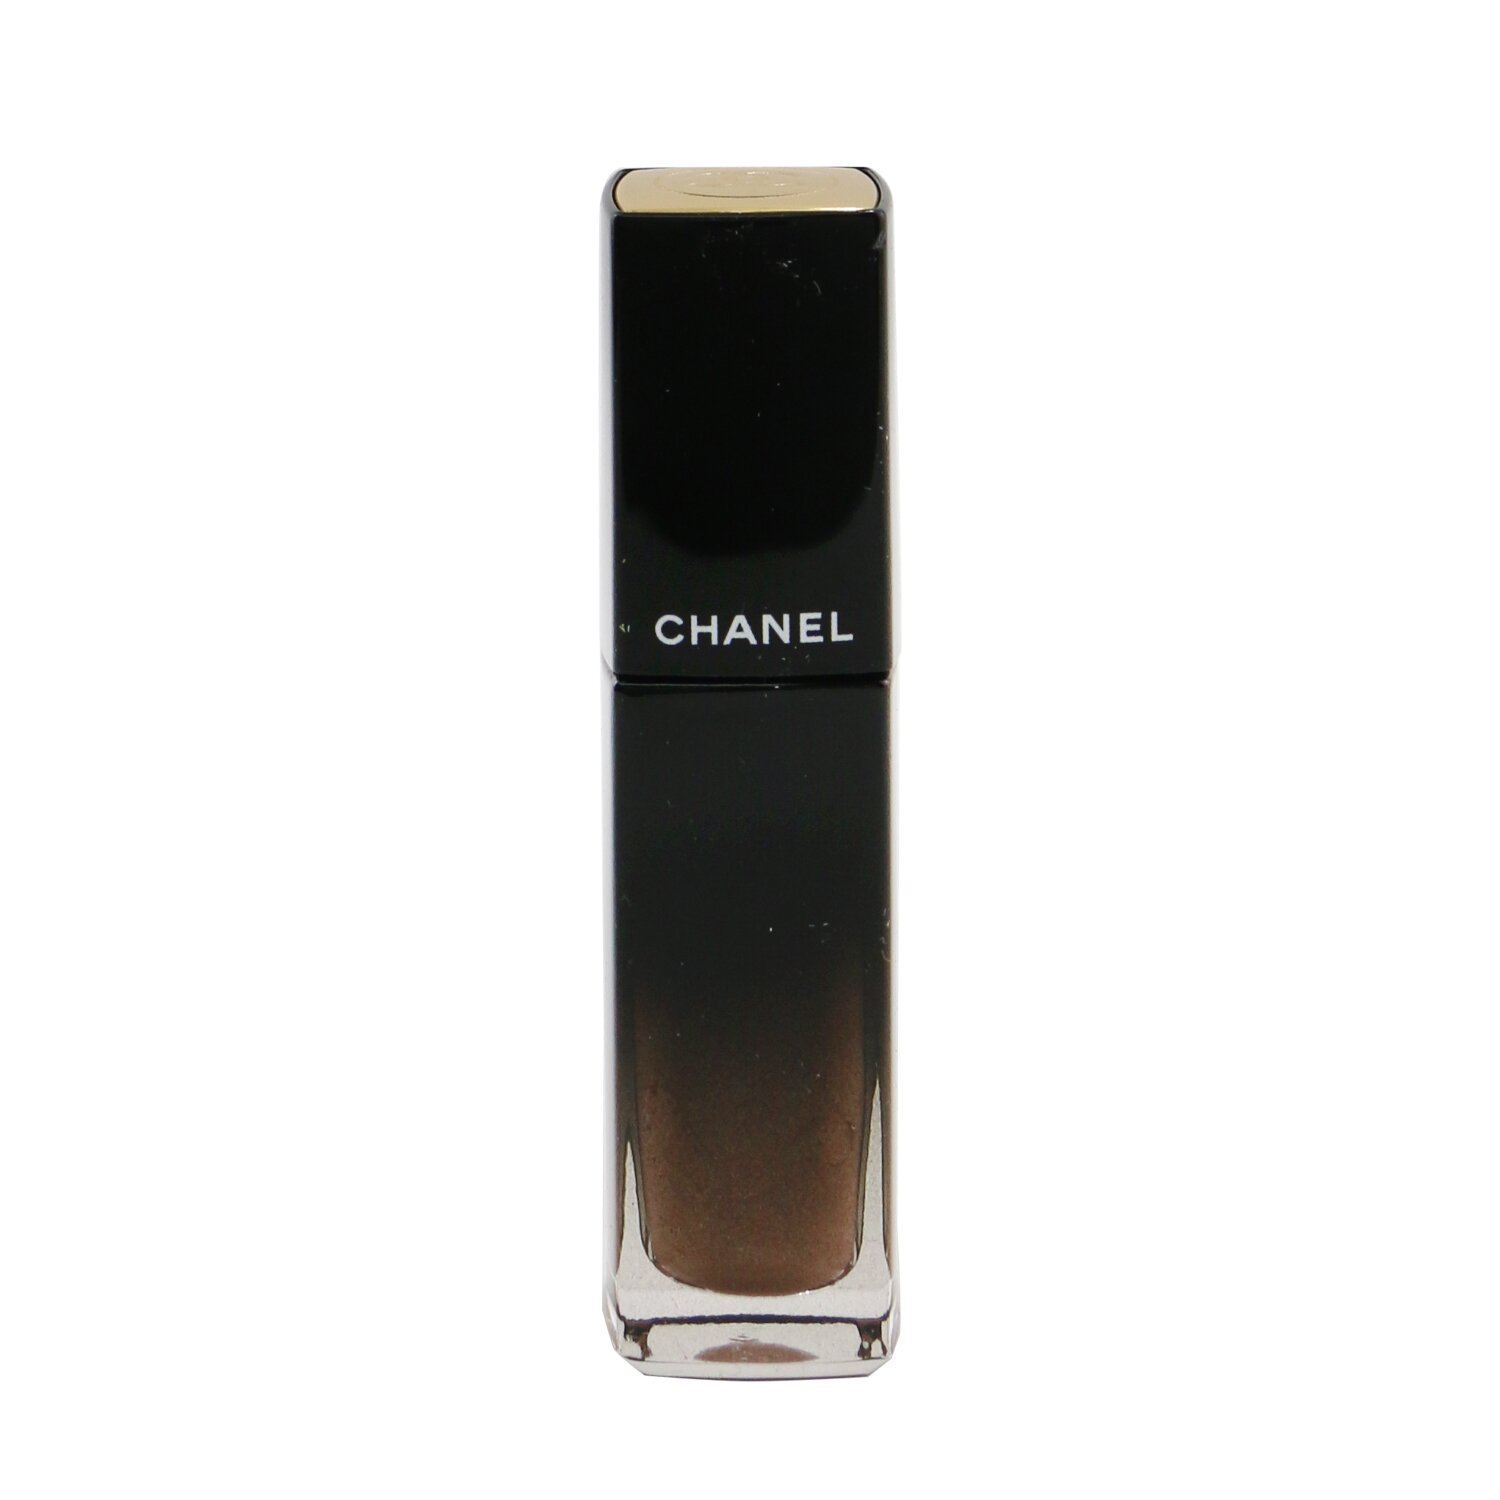 CHANEL Rouge Allure Laque Ultrawear Shine Liquid Lip Color 5.5ml